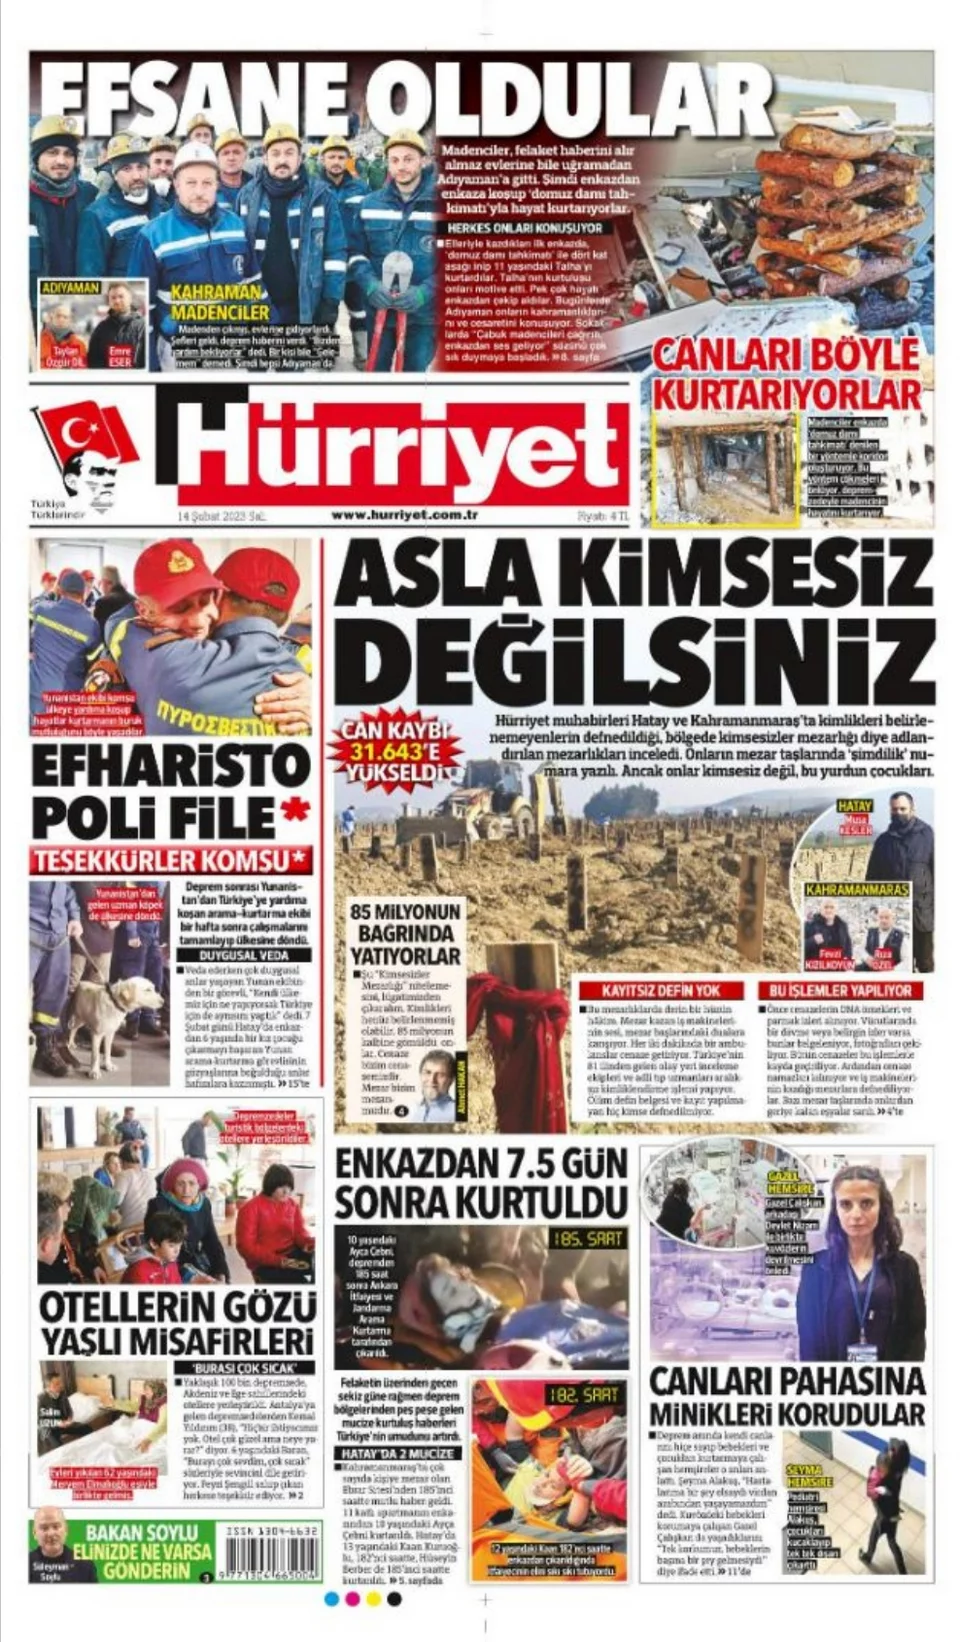 Σεισμός στην Τουρκία: «Ευχαριστώ πολύ φίλε» γράφει η Hurriyet για την βοήθεια της Ελλάδας